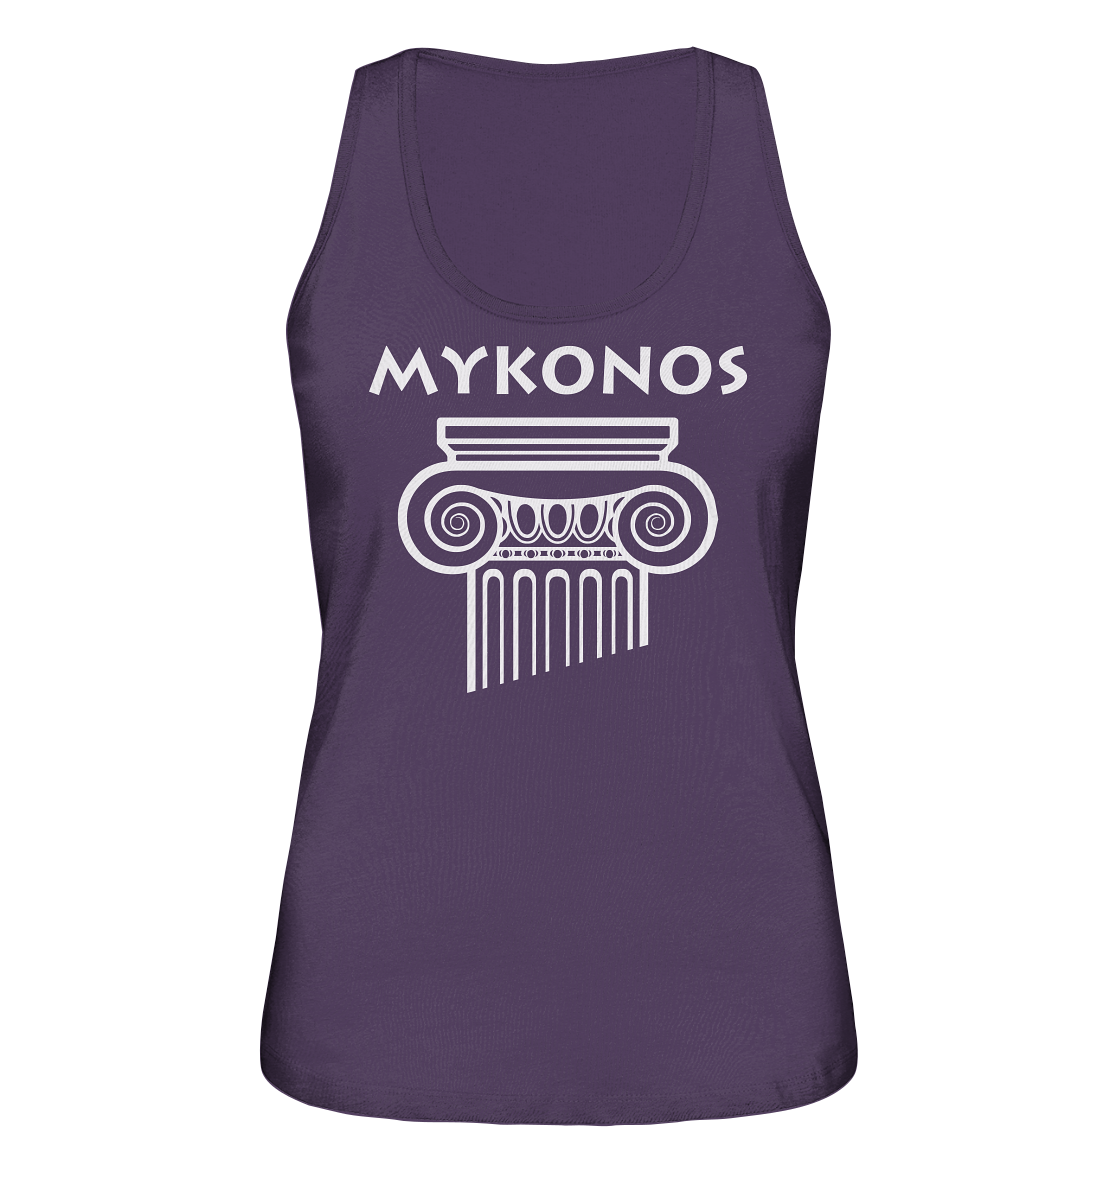 Mykonos Griechischer Säulenkopf - Ladies Organic Tank-Top